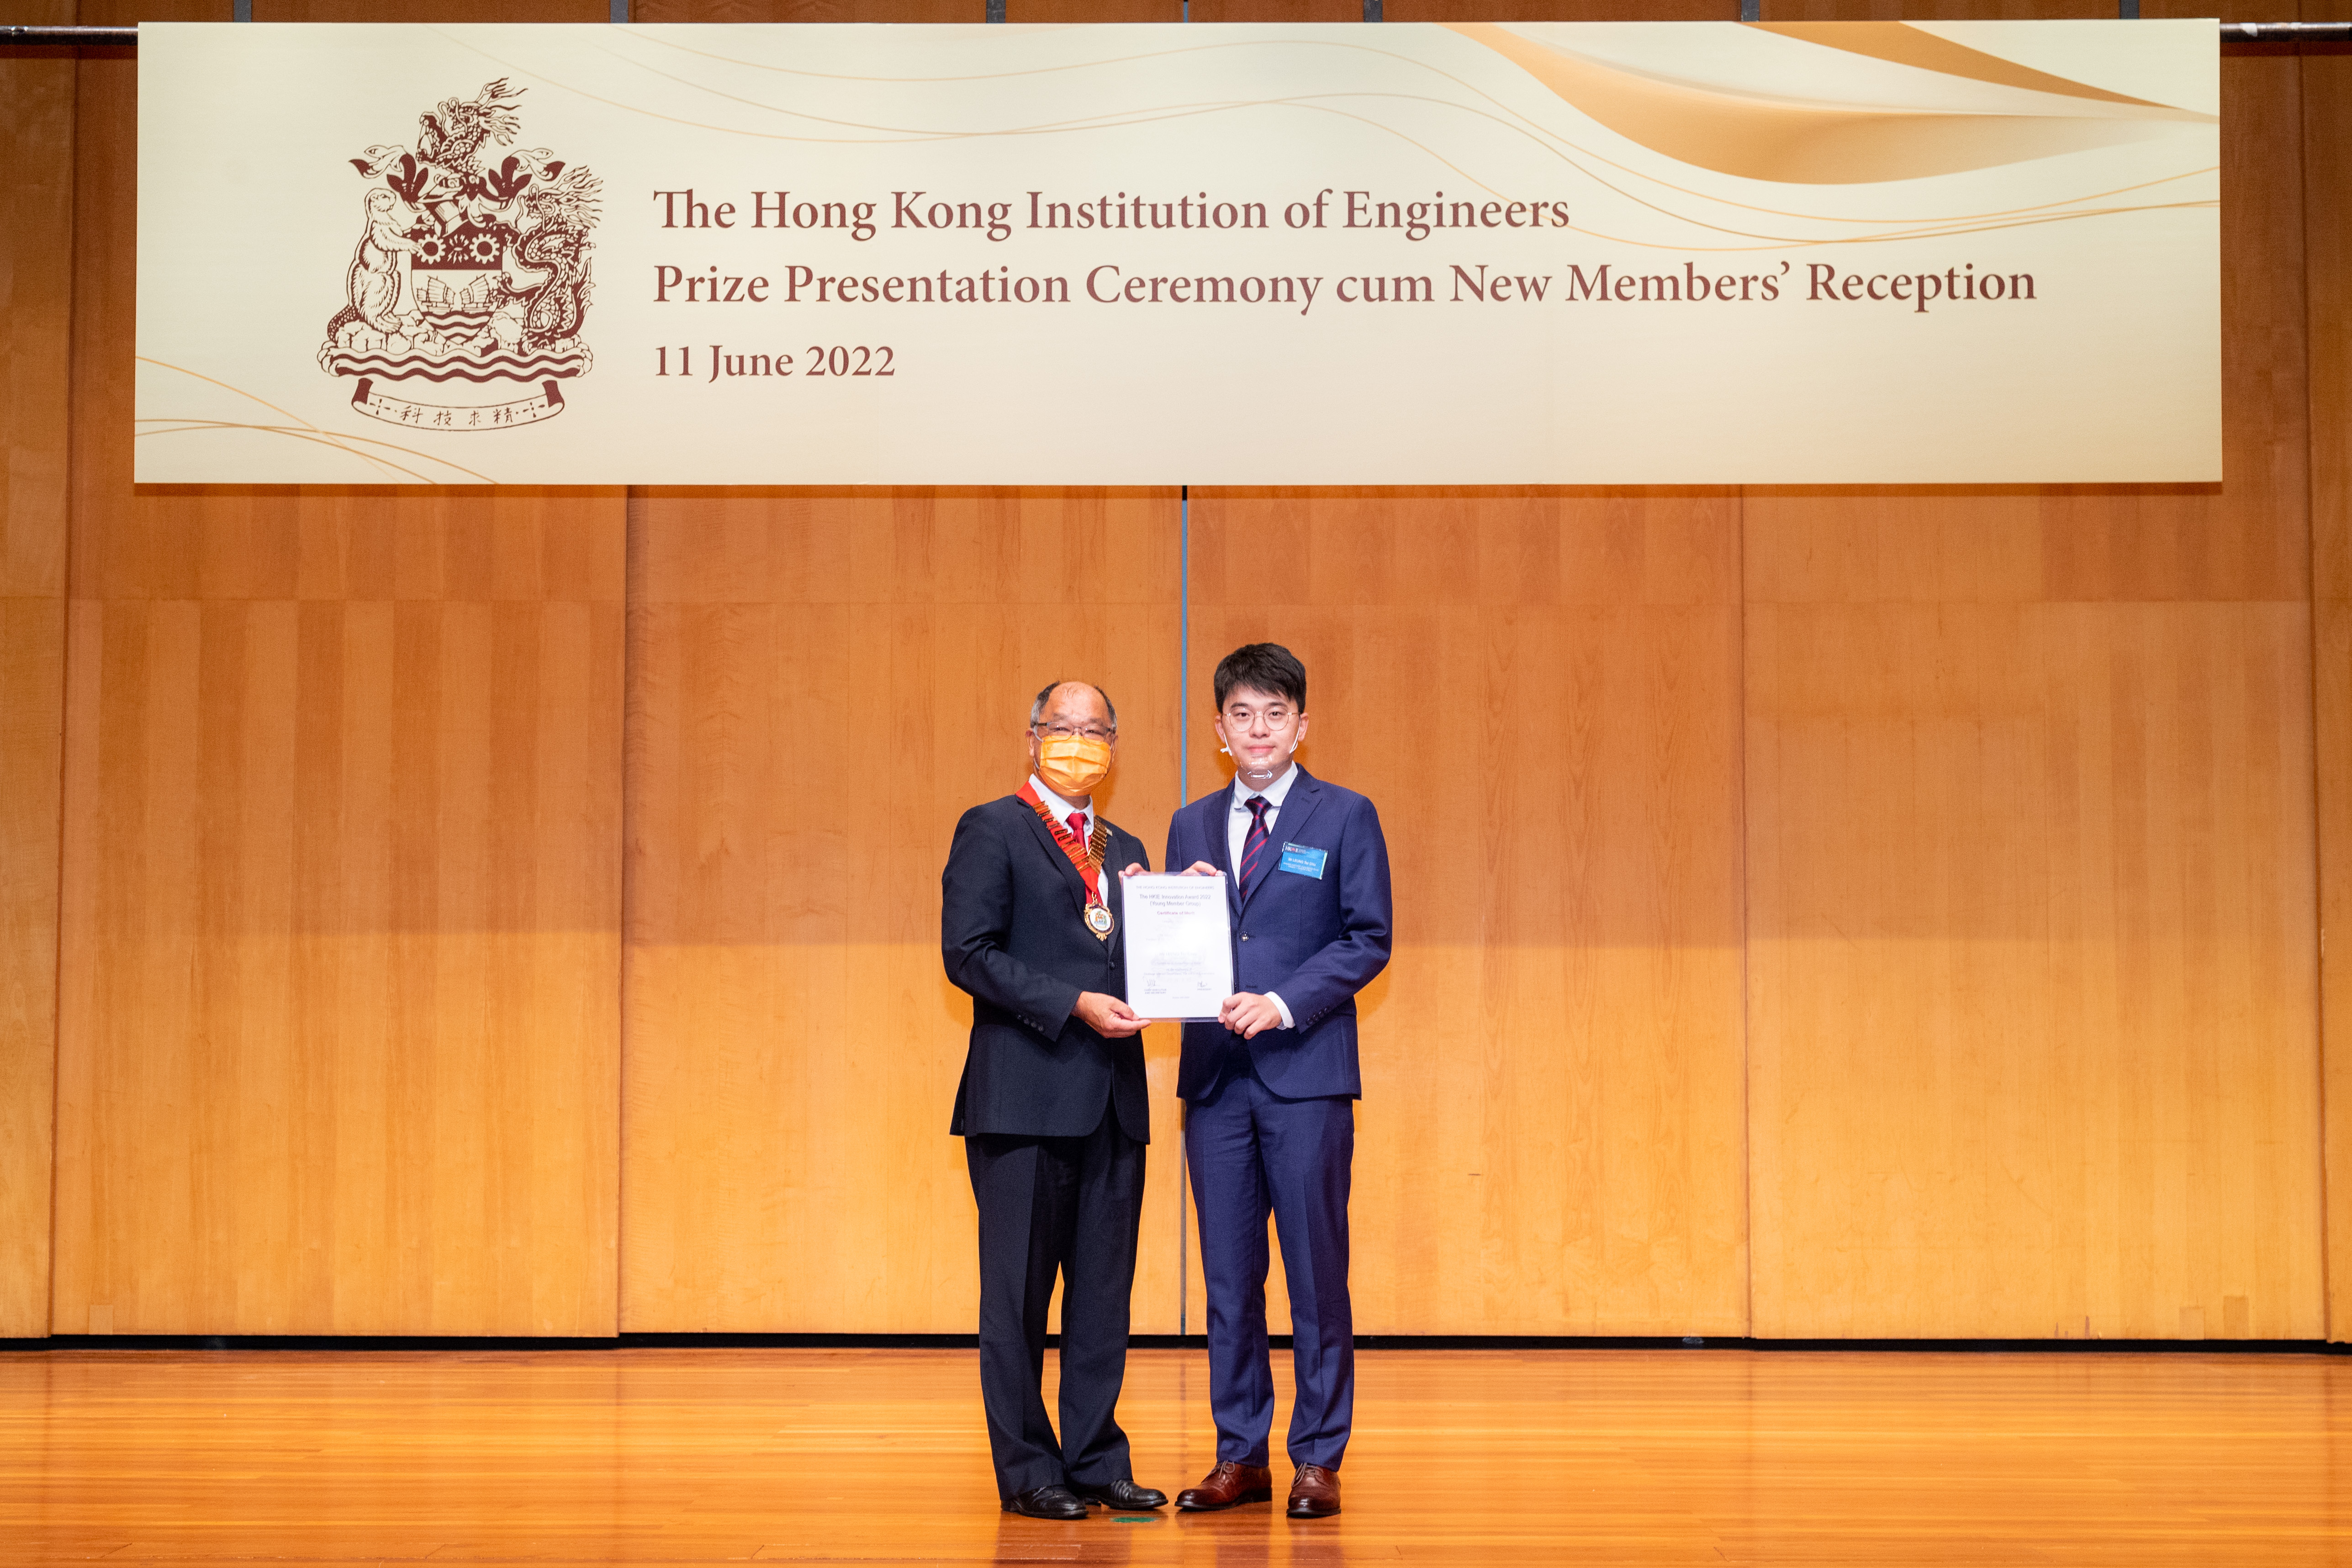 助理机电工程师梁子超先生(右)荣获「香港工程师学会创意奖（青年会员组）2022」组别I（发明）优异奖